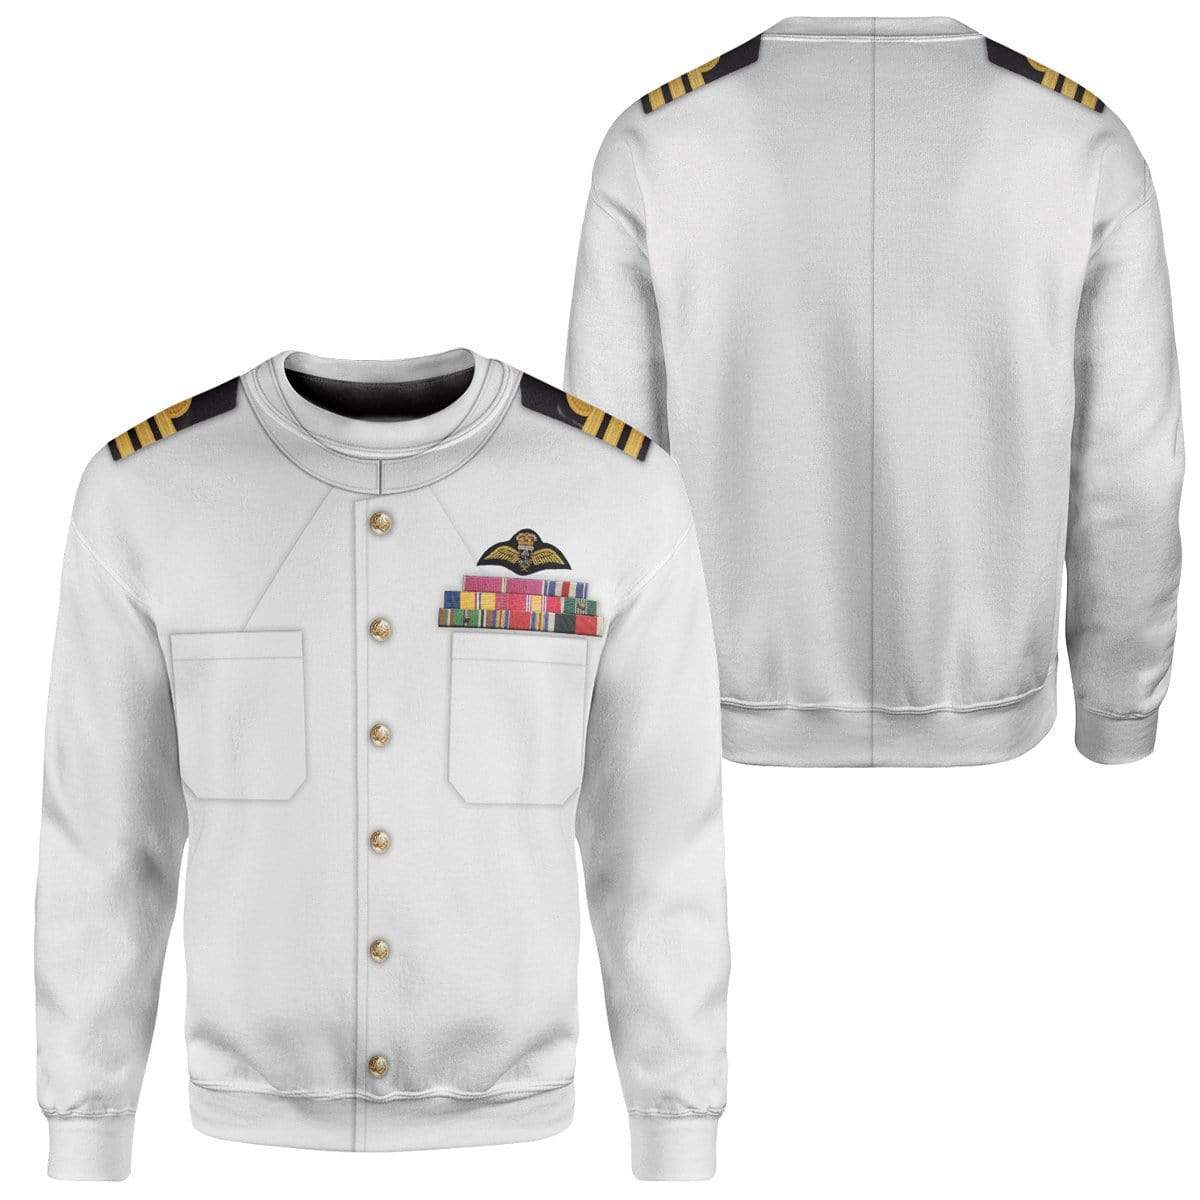 Hoodie Custom White Uniforms Of The Royal Navy Apparel HD-AT15101901 3D Custom Fleece Hoodies 